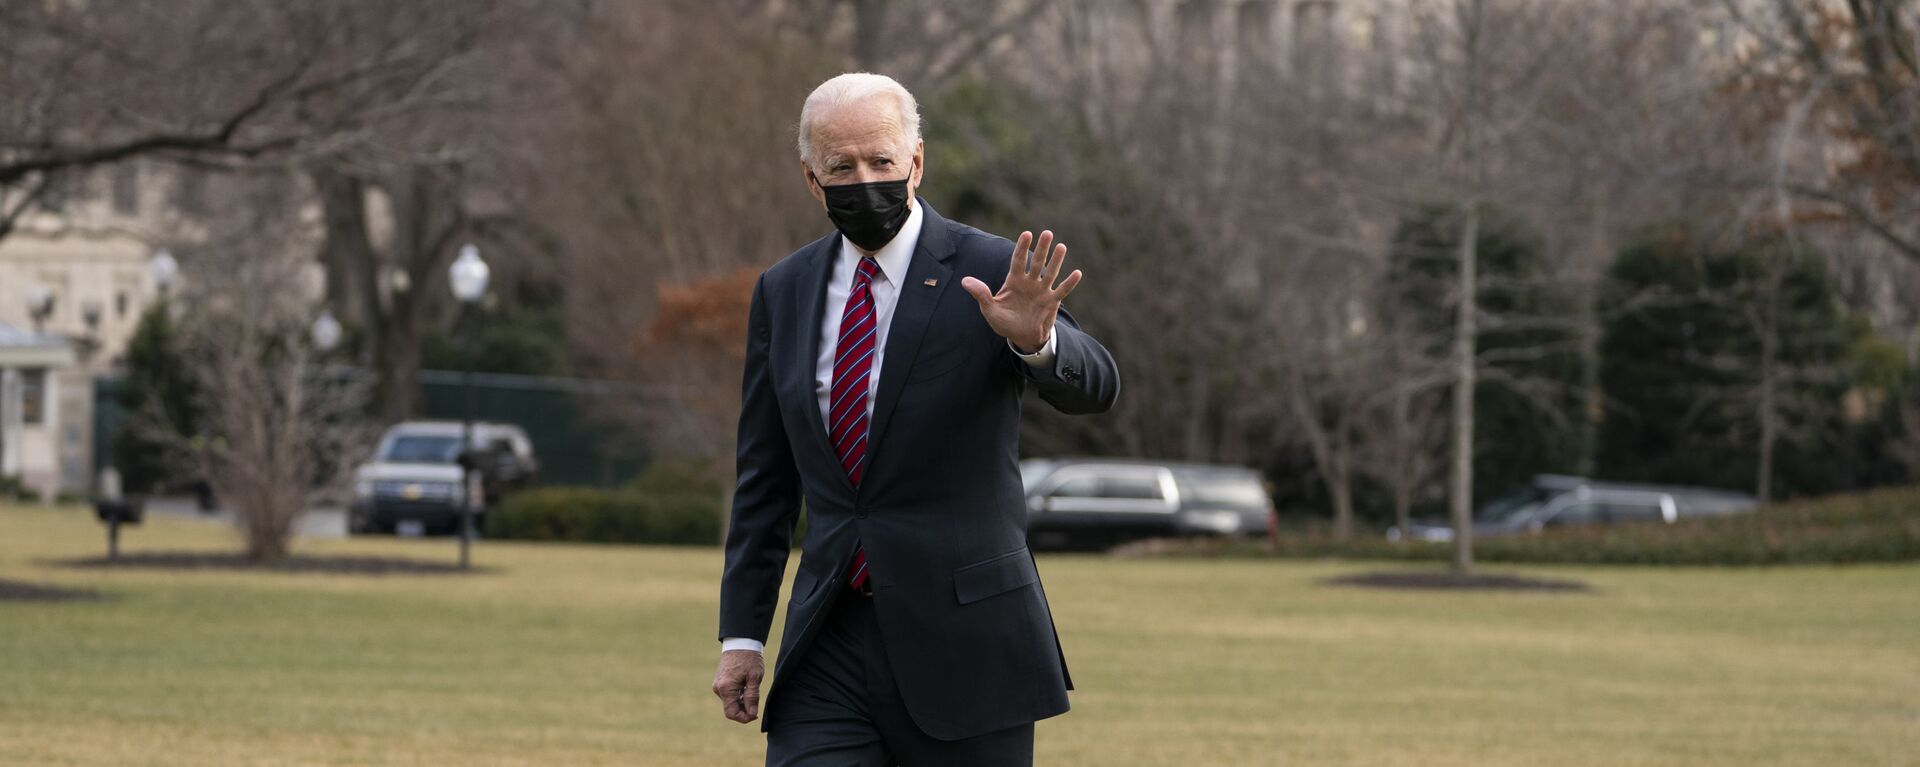 Joe Biden, presidente de EEUU, en el jardín de la Casa Blanca, en Washington, el 29 de enero del 2021 - Sputnik Mundo, 1920, 17.06.2021